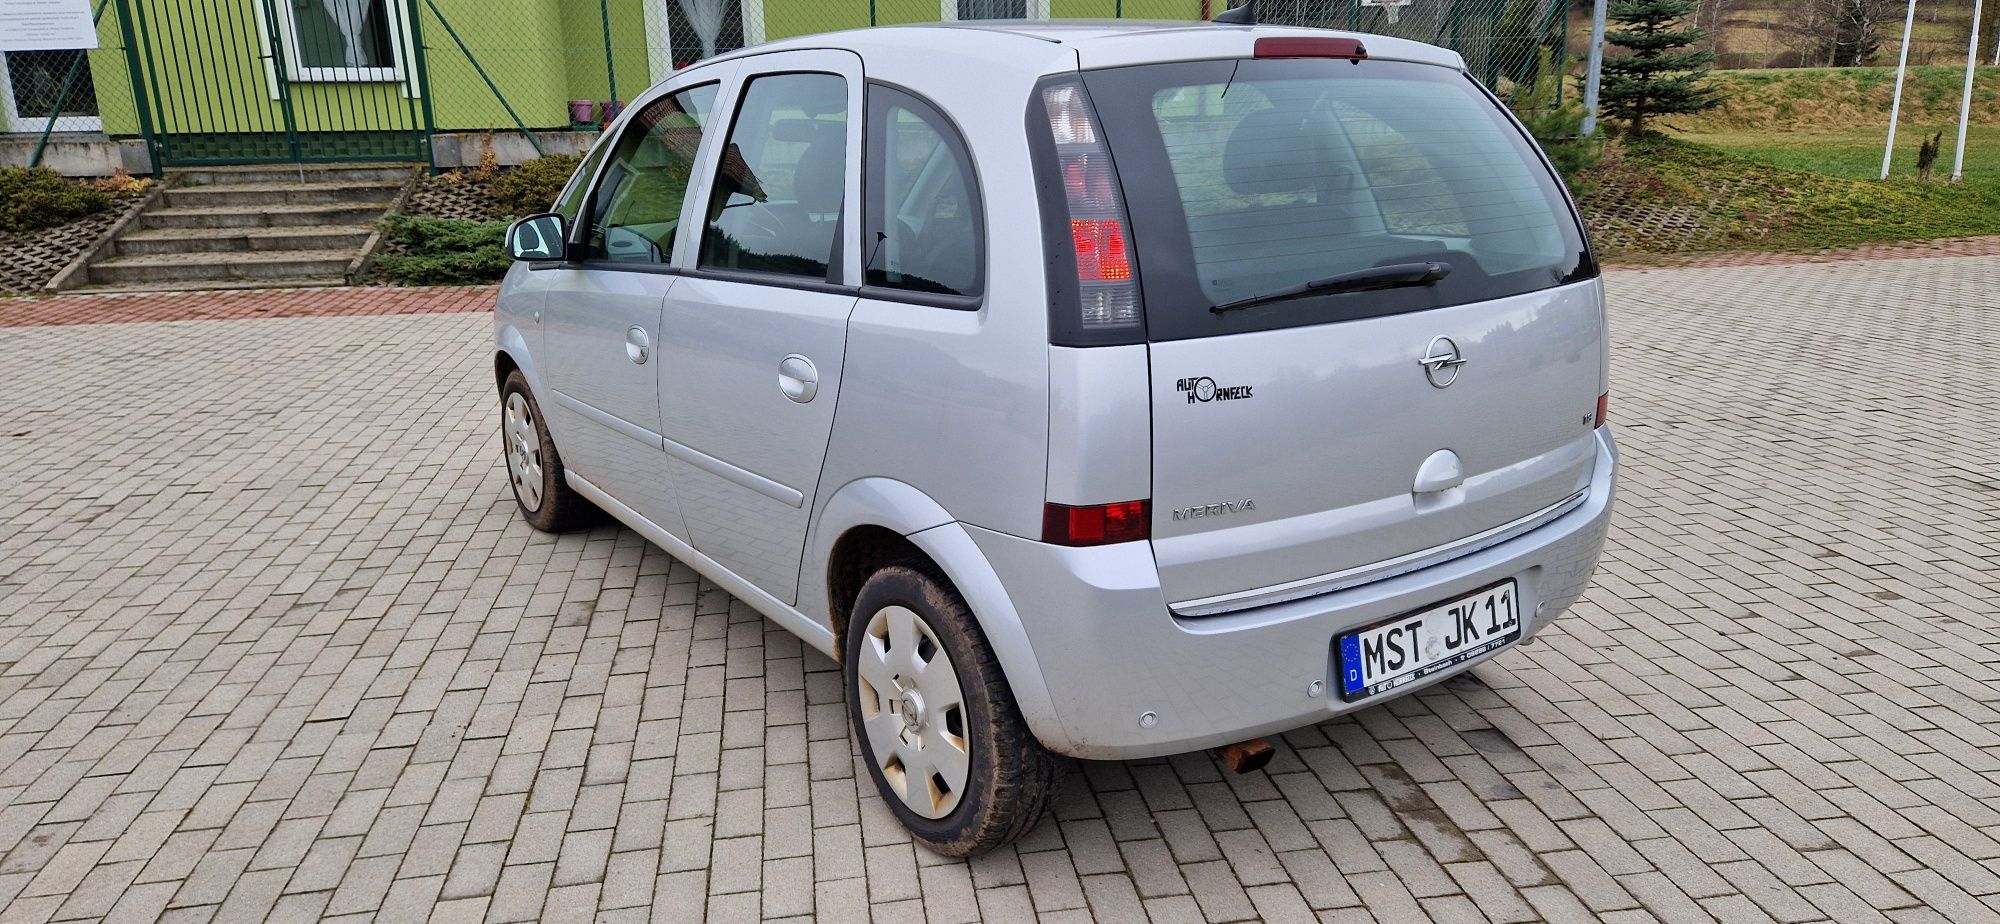 Opel Meriva 1.8! 2008r! Lift! Automat! Klima! 100TKM!